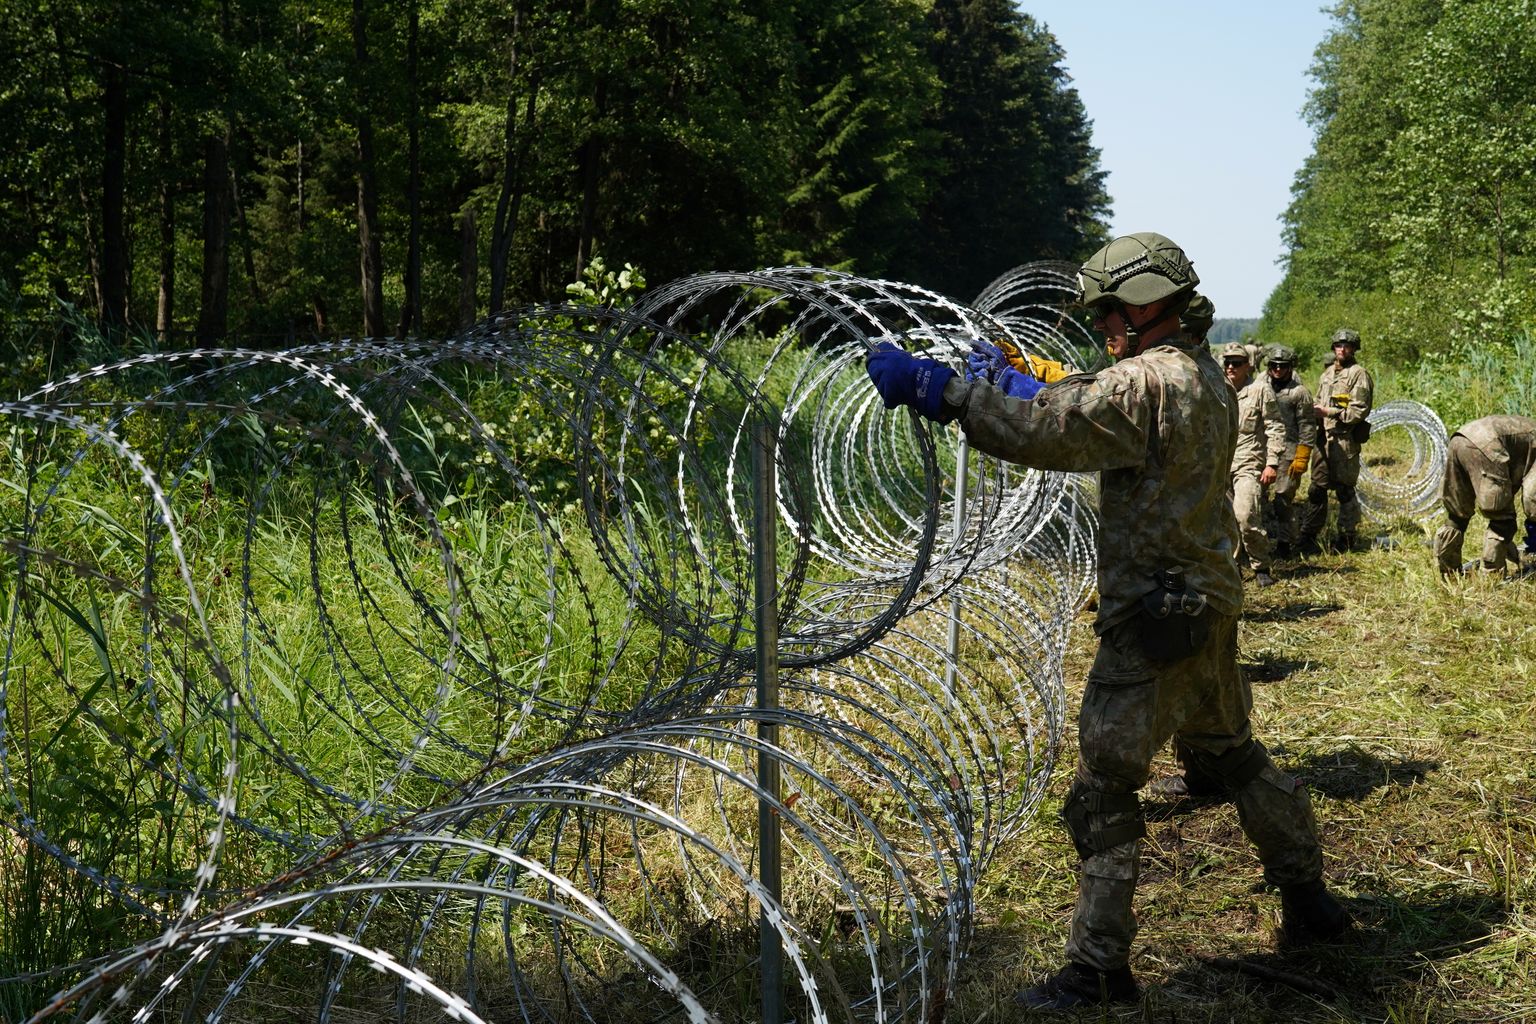 Leedu sõjaväelane Druskininkai lähedal piiri tugevadamas. Foto on illustratiivne